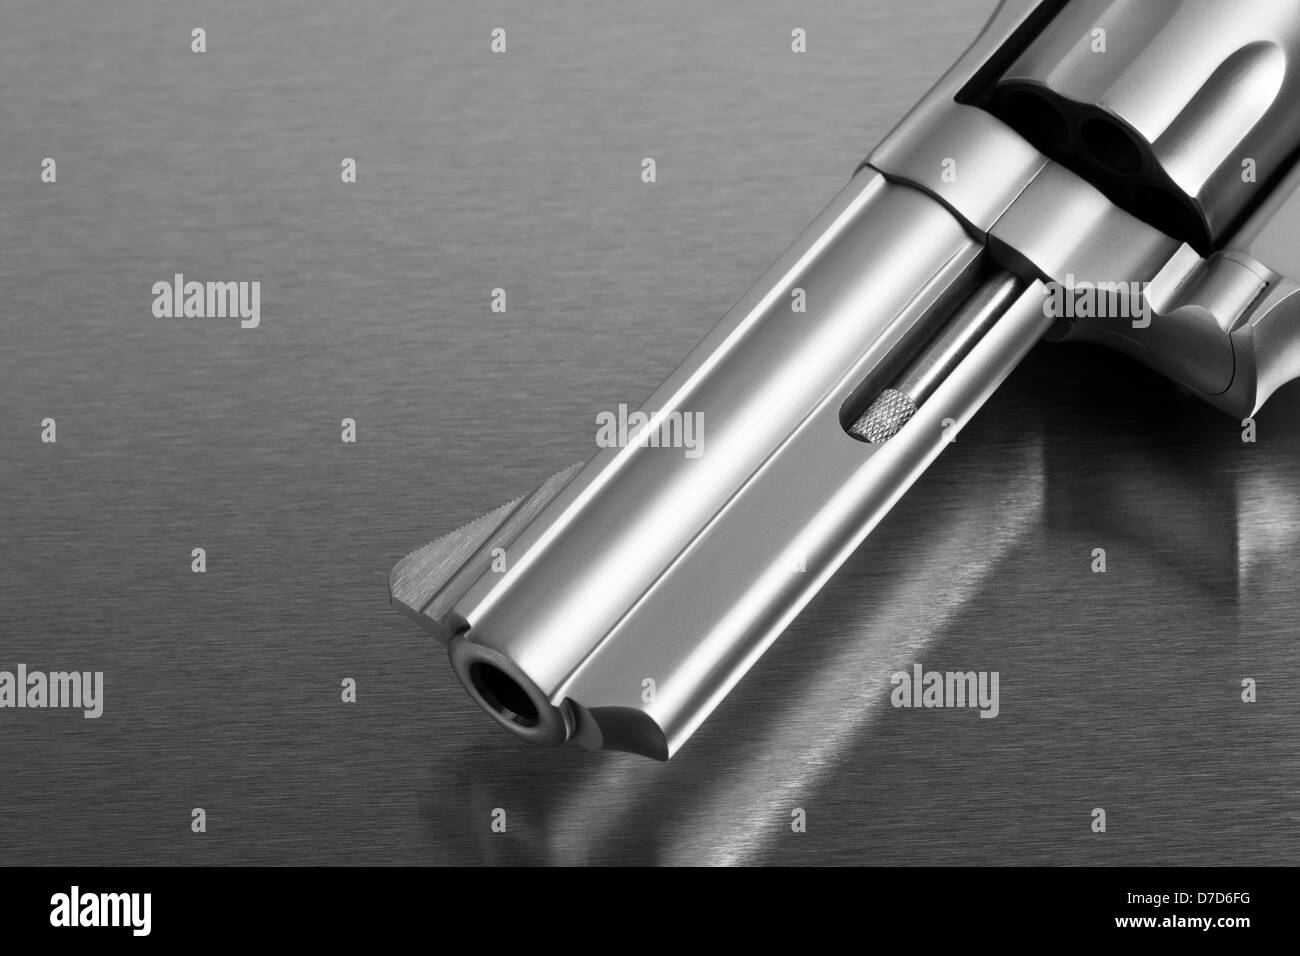 Pistole auf Metall - moderne Revolver Pistole auf Edelstahl-Oberfläche Stockfoto